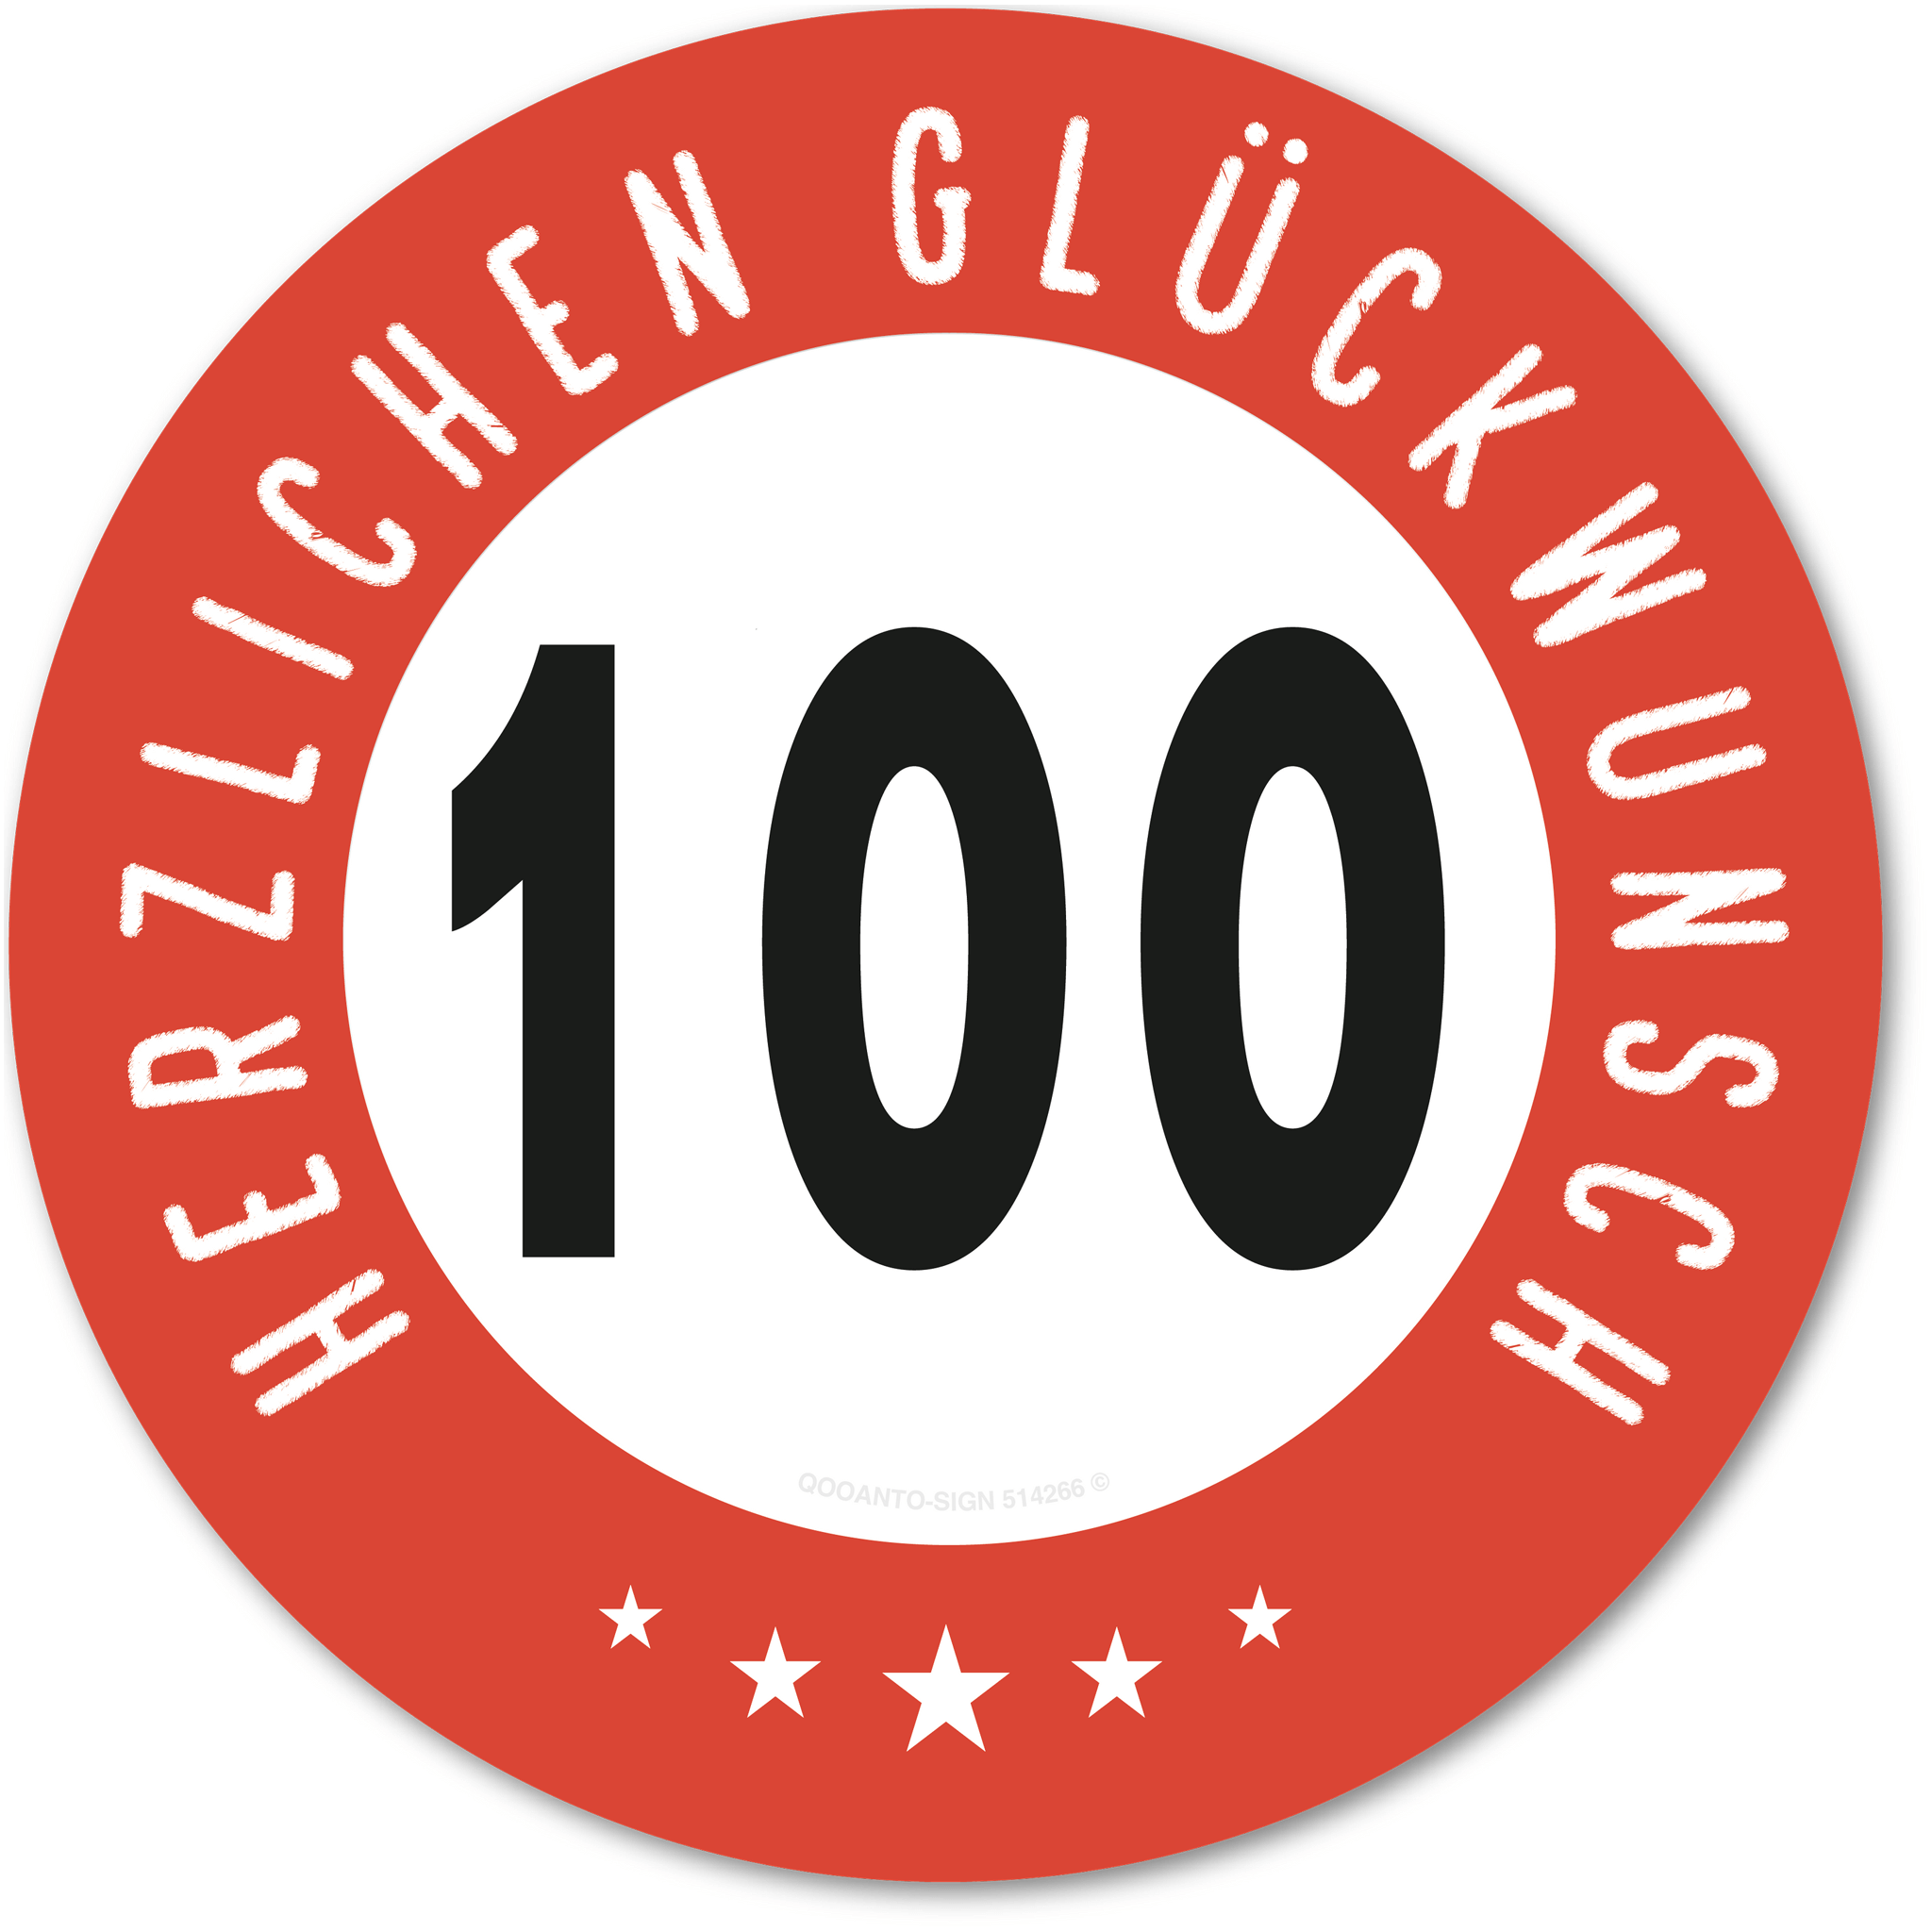 Herzlichen Glückwunsch 100 Jahre mit 5 Sterne - Geburtstag, Jubiläum, Ehrentag, Jahrestag Strassenschild